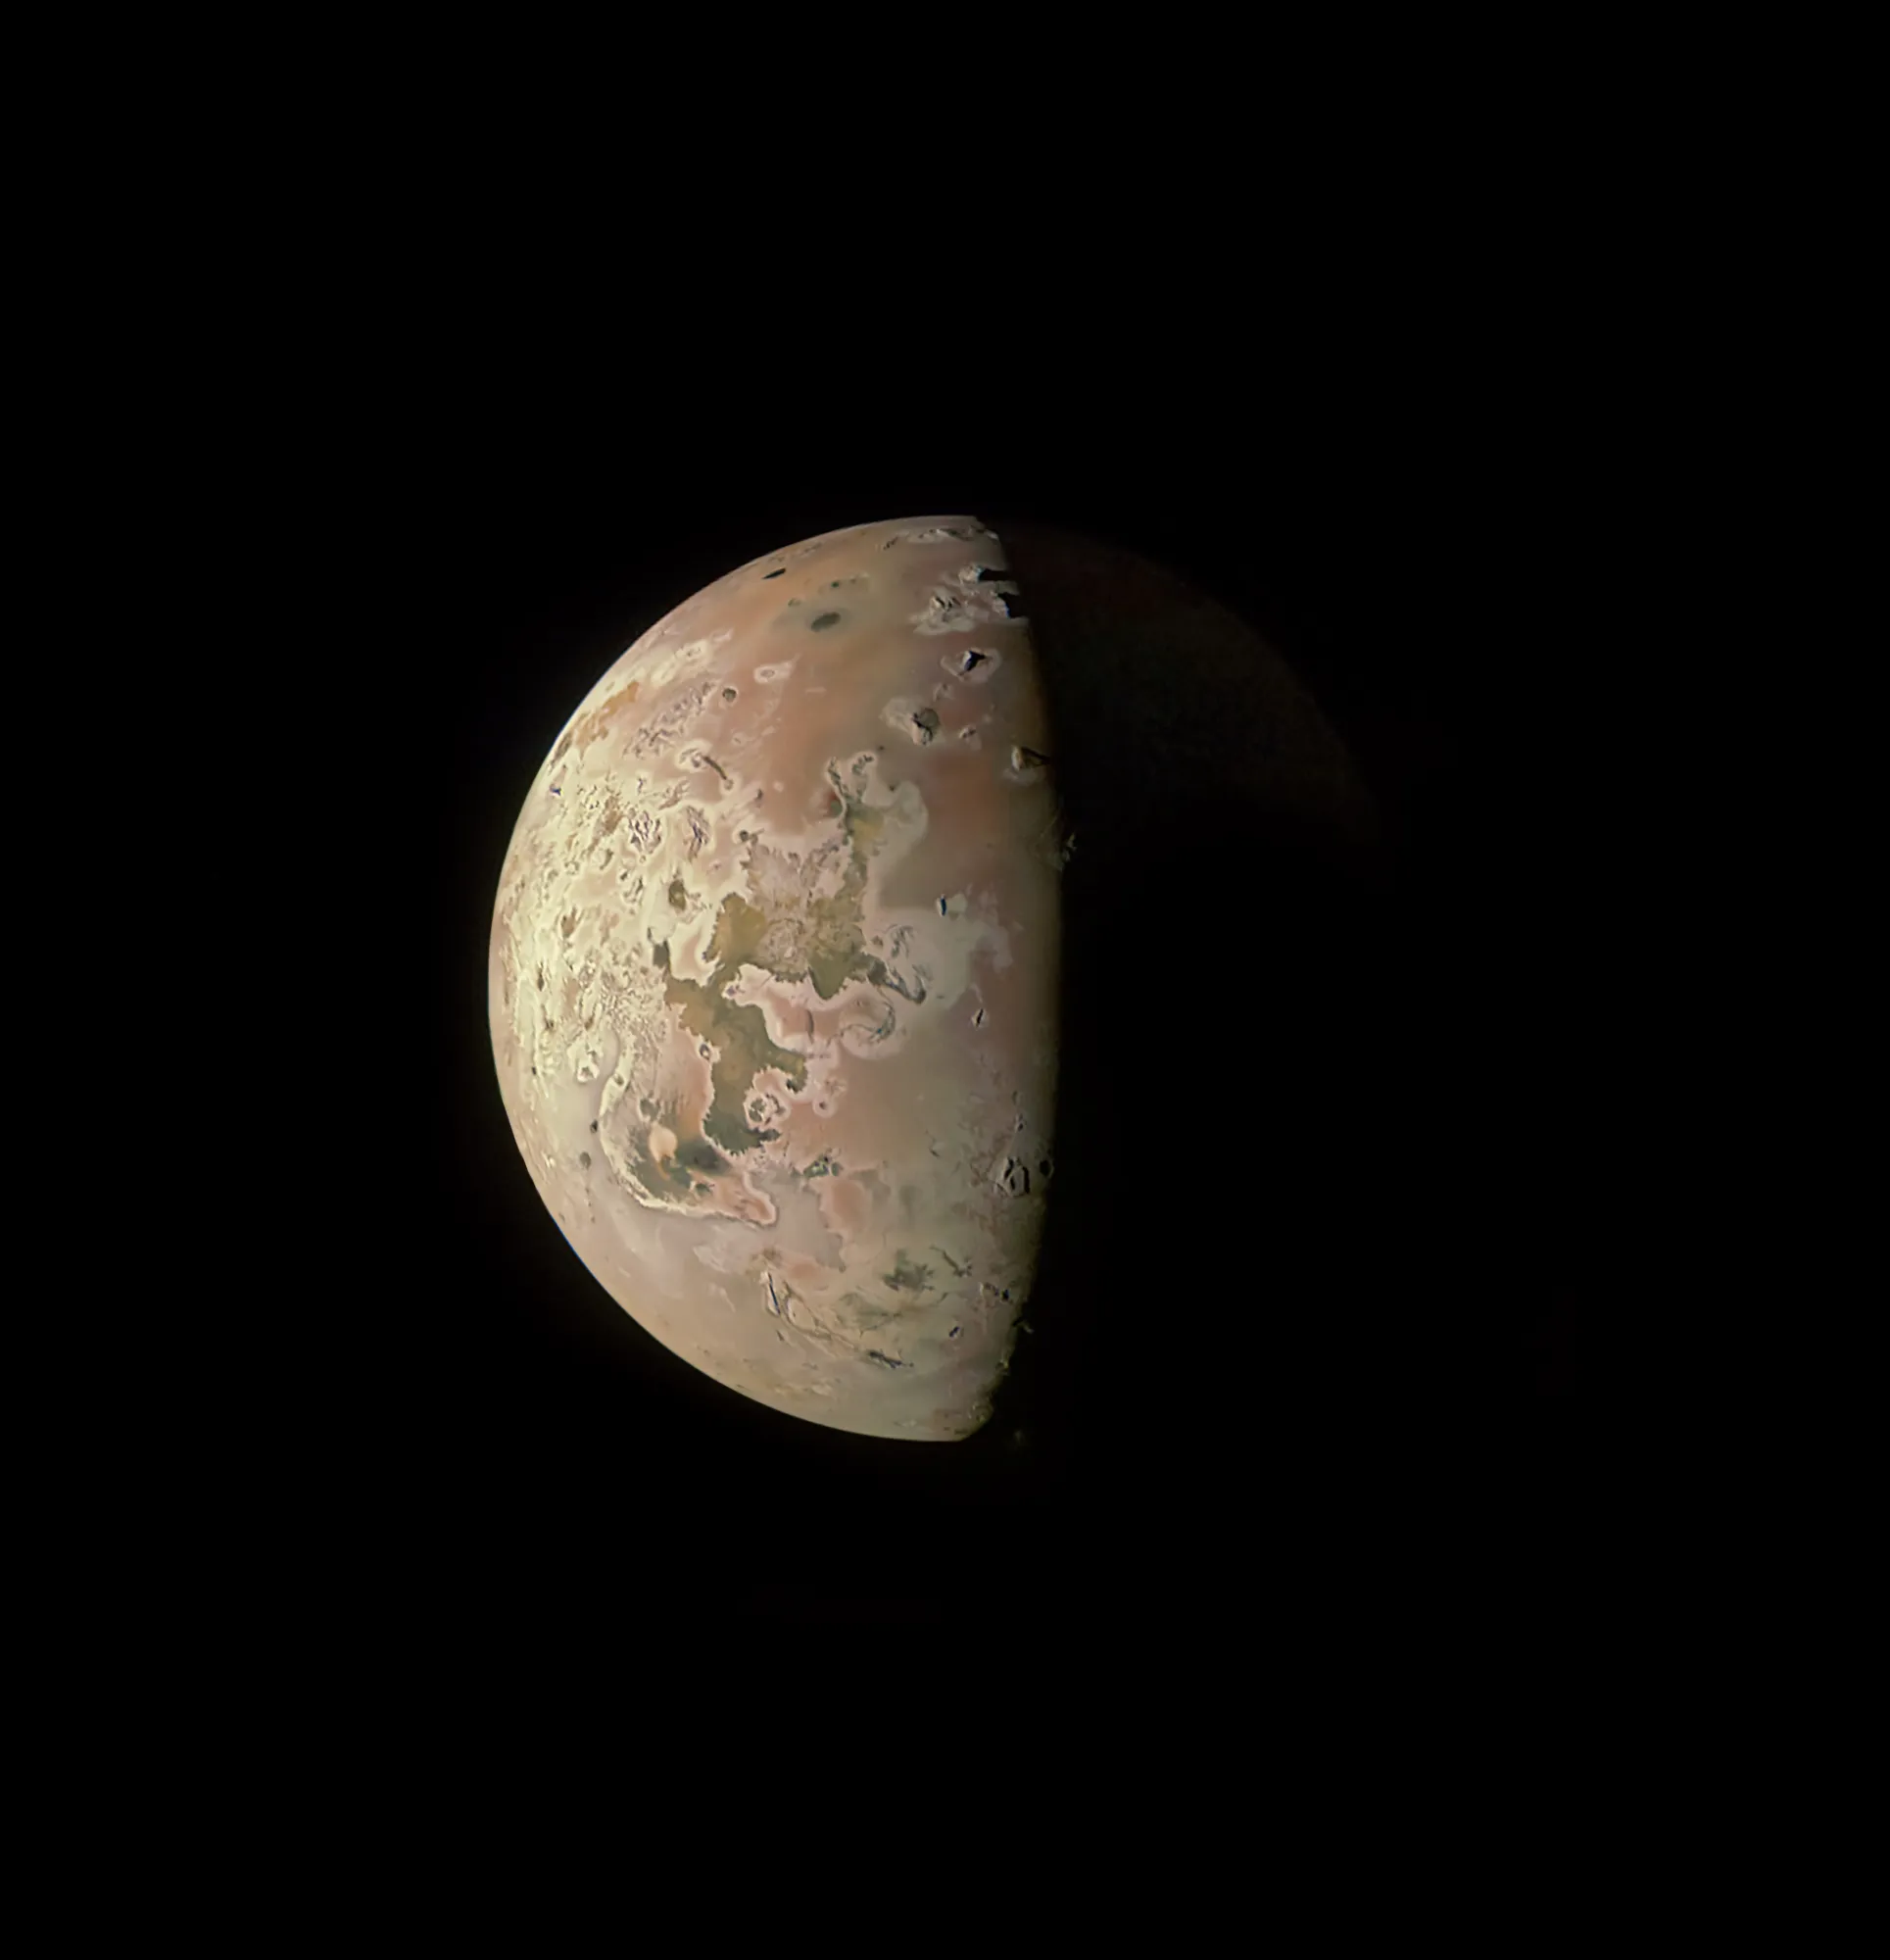 美国国家航空航天局的朱诺号将于12月30日近距离观察木星的火山卫星木卫一